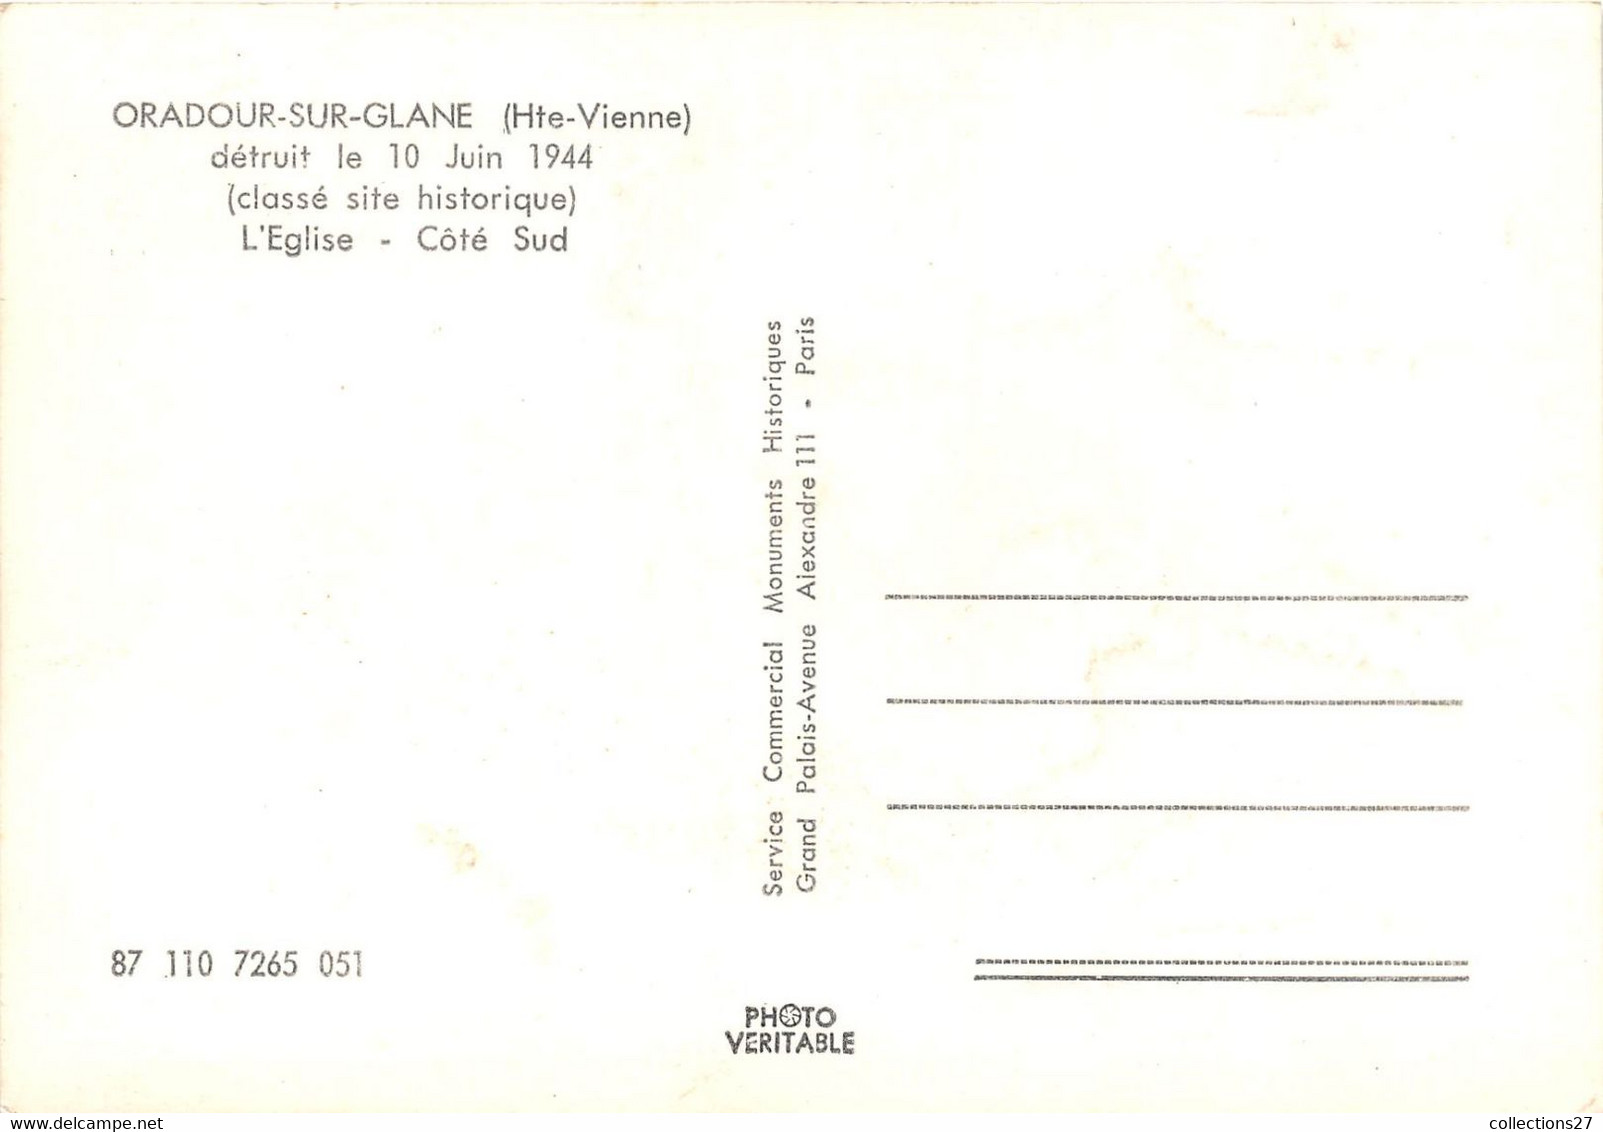 87-ARADOUR-SUR-GLANE- DETRUIT LE 10 JUIN 1944, L'EGLISE CÔTE SUD - Oradour Sur Glane